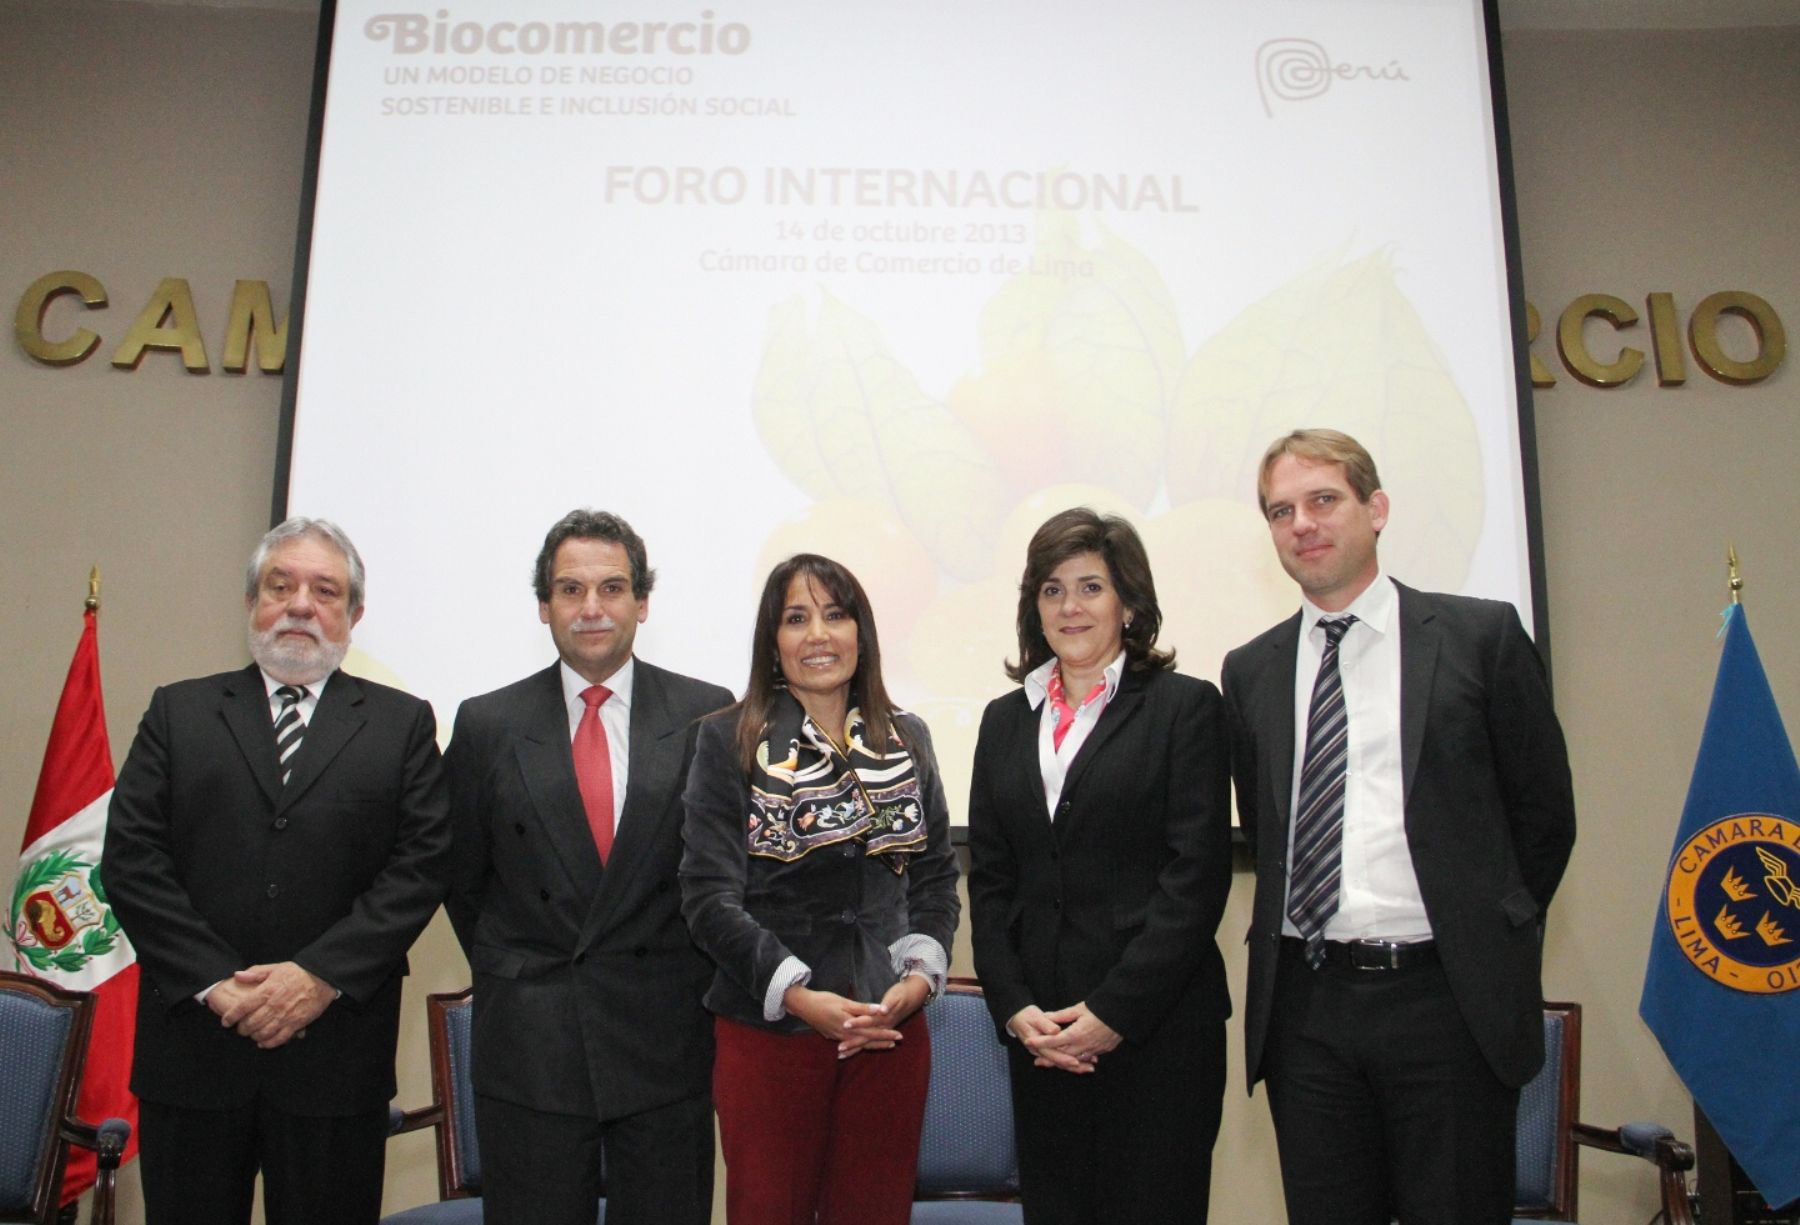 Hoy se inició Foro Internacional y Rueda de Negocios: Biocomercio, un modelo de negocio sostenible e inclusión social.